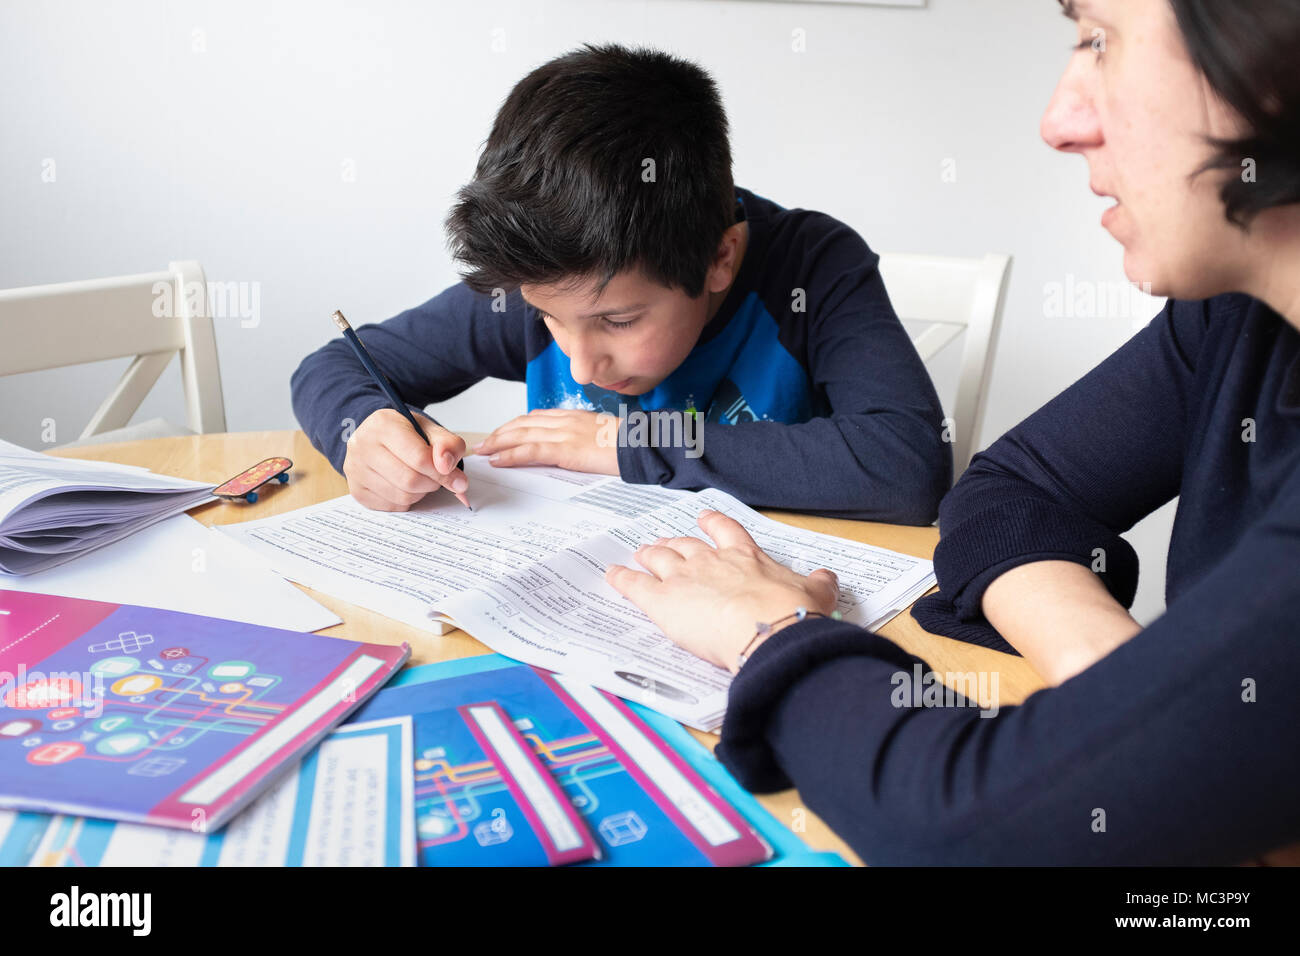 Apprendre à la maison, étudier à la maison, garçon de 11 ans, Royaume-Uni Banque D'Images